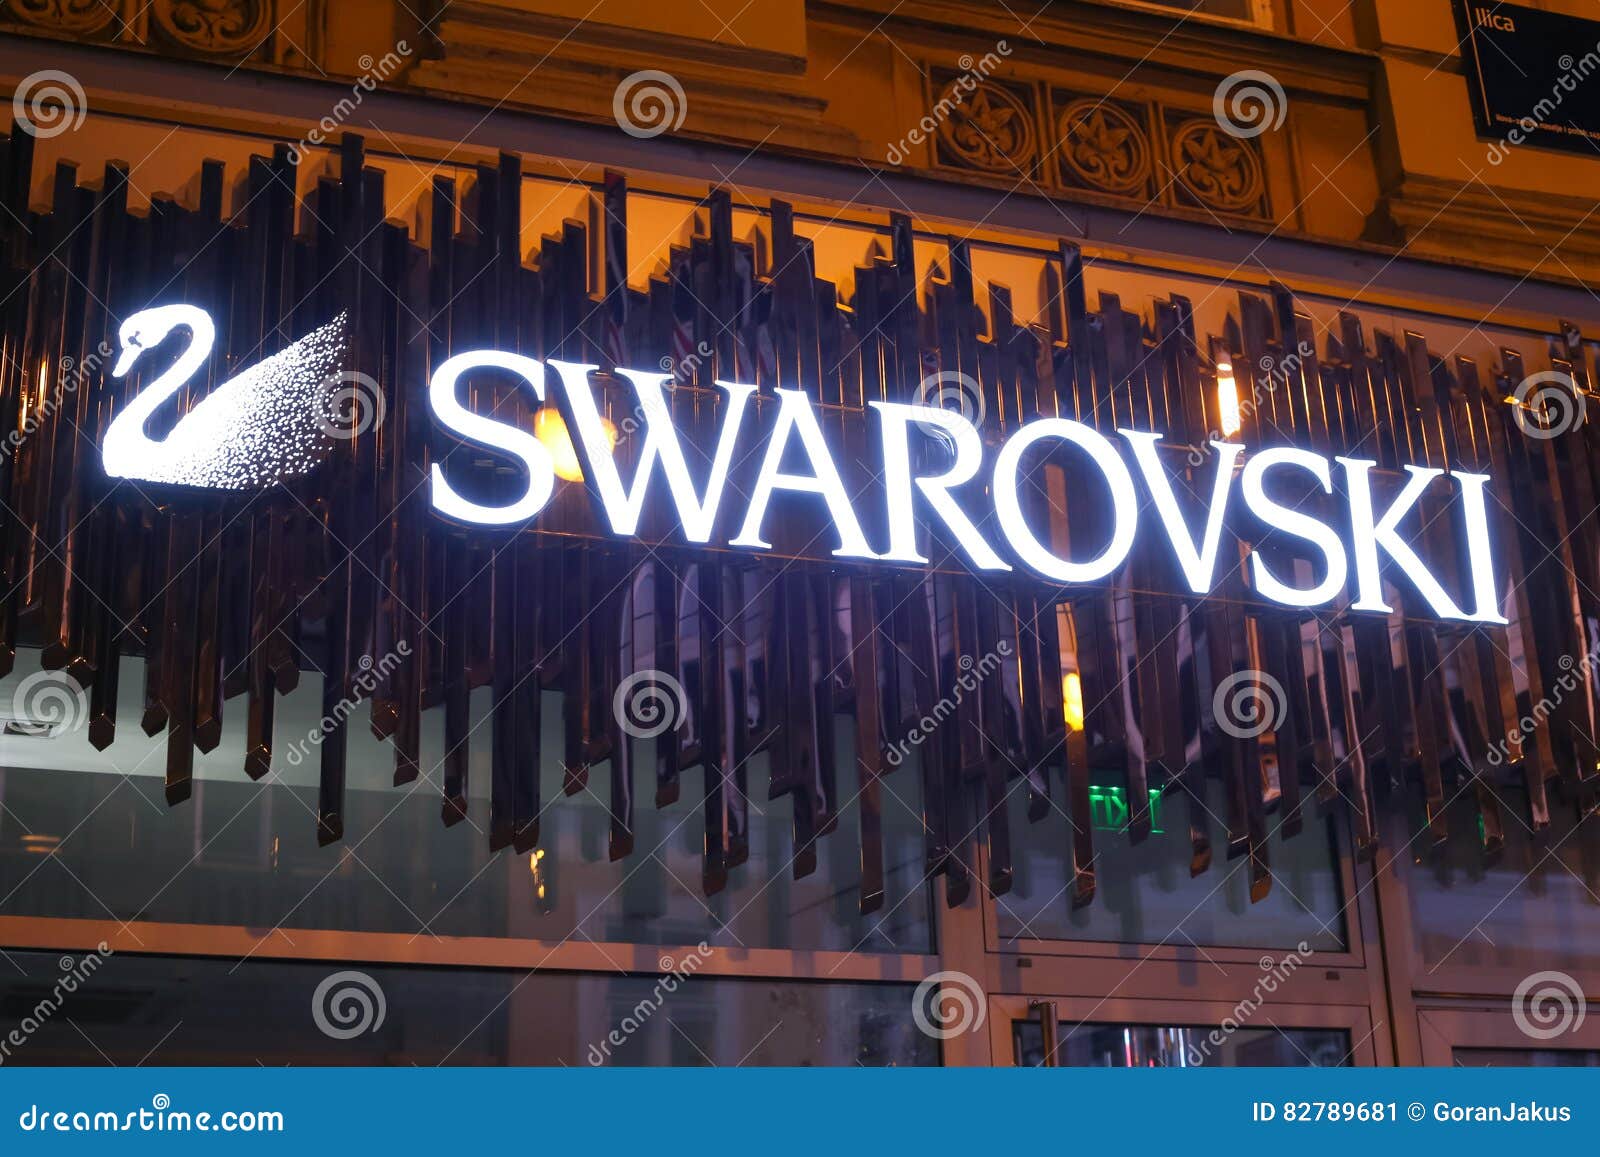 Anything Swarovski | Swarovski, ? logo, Trendy jewerly